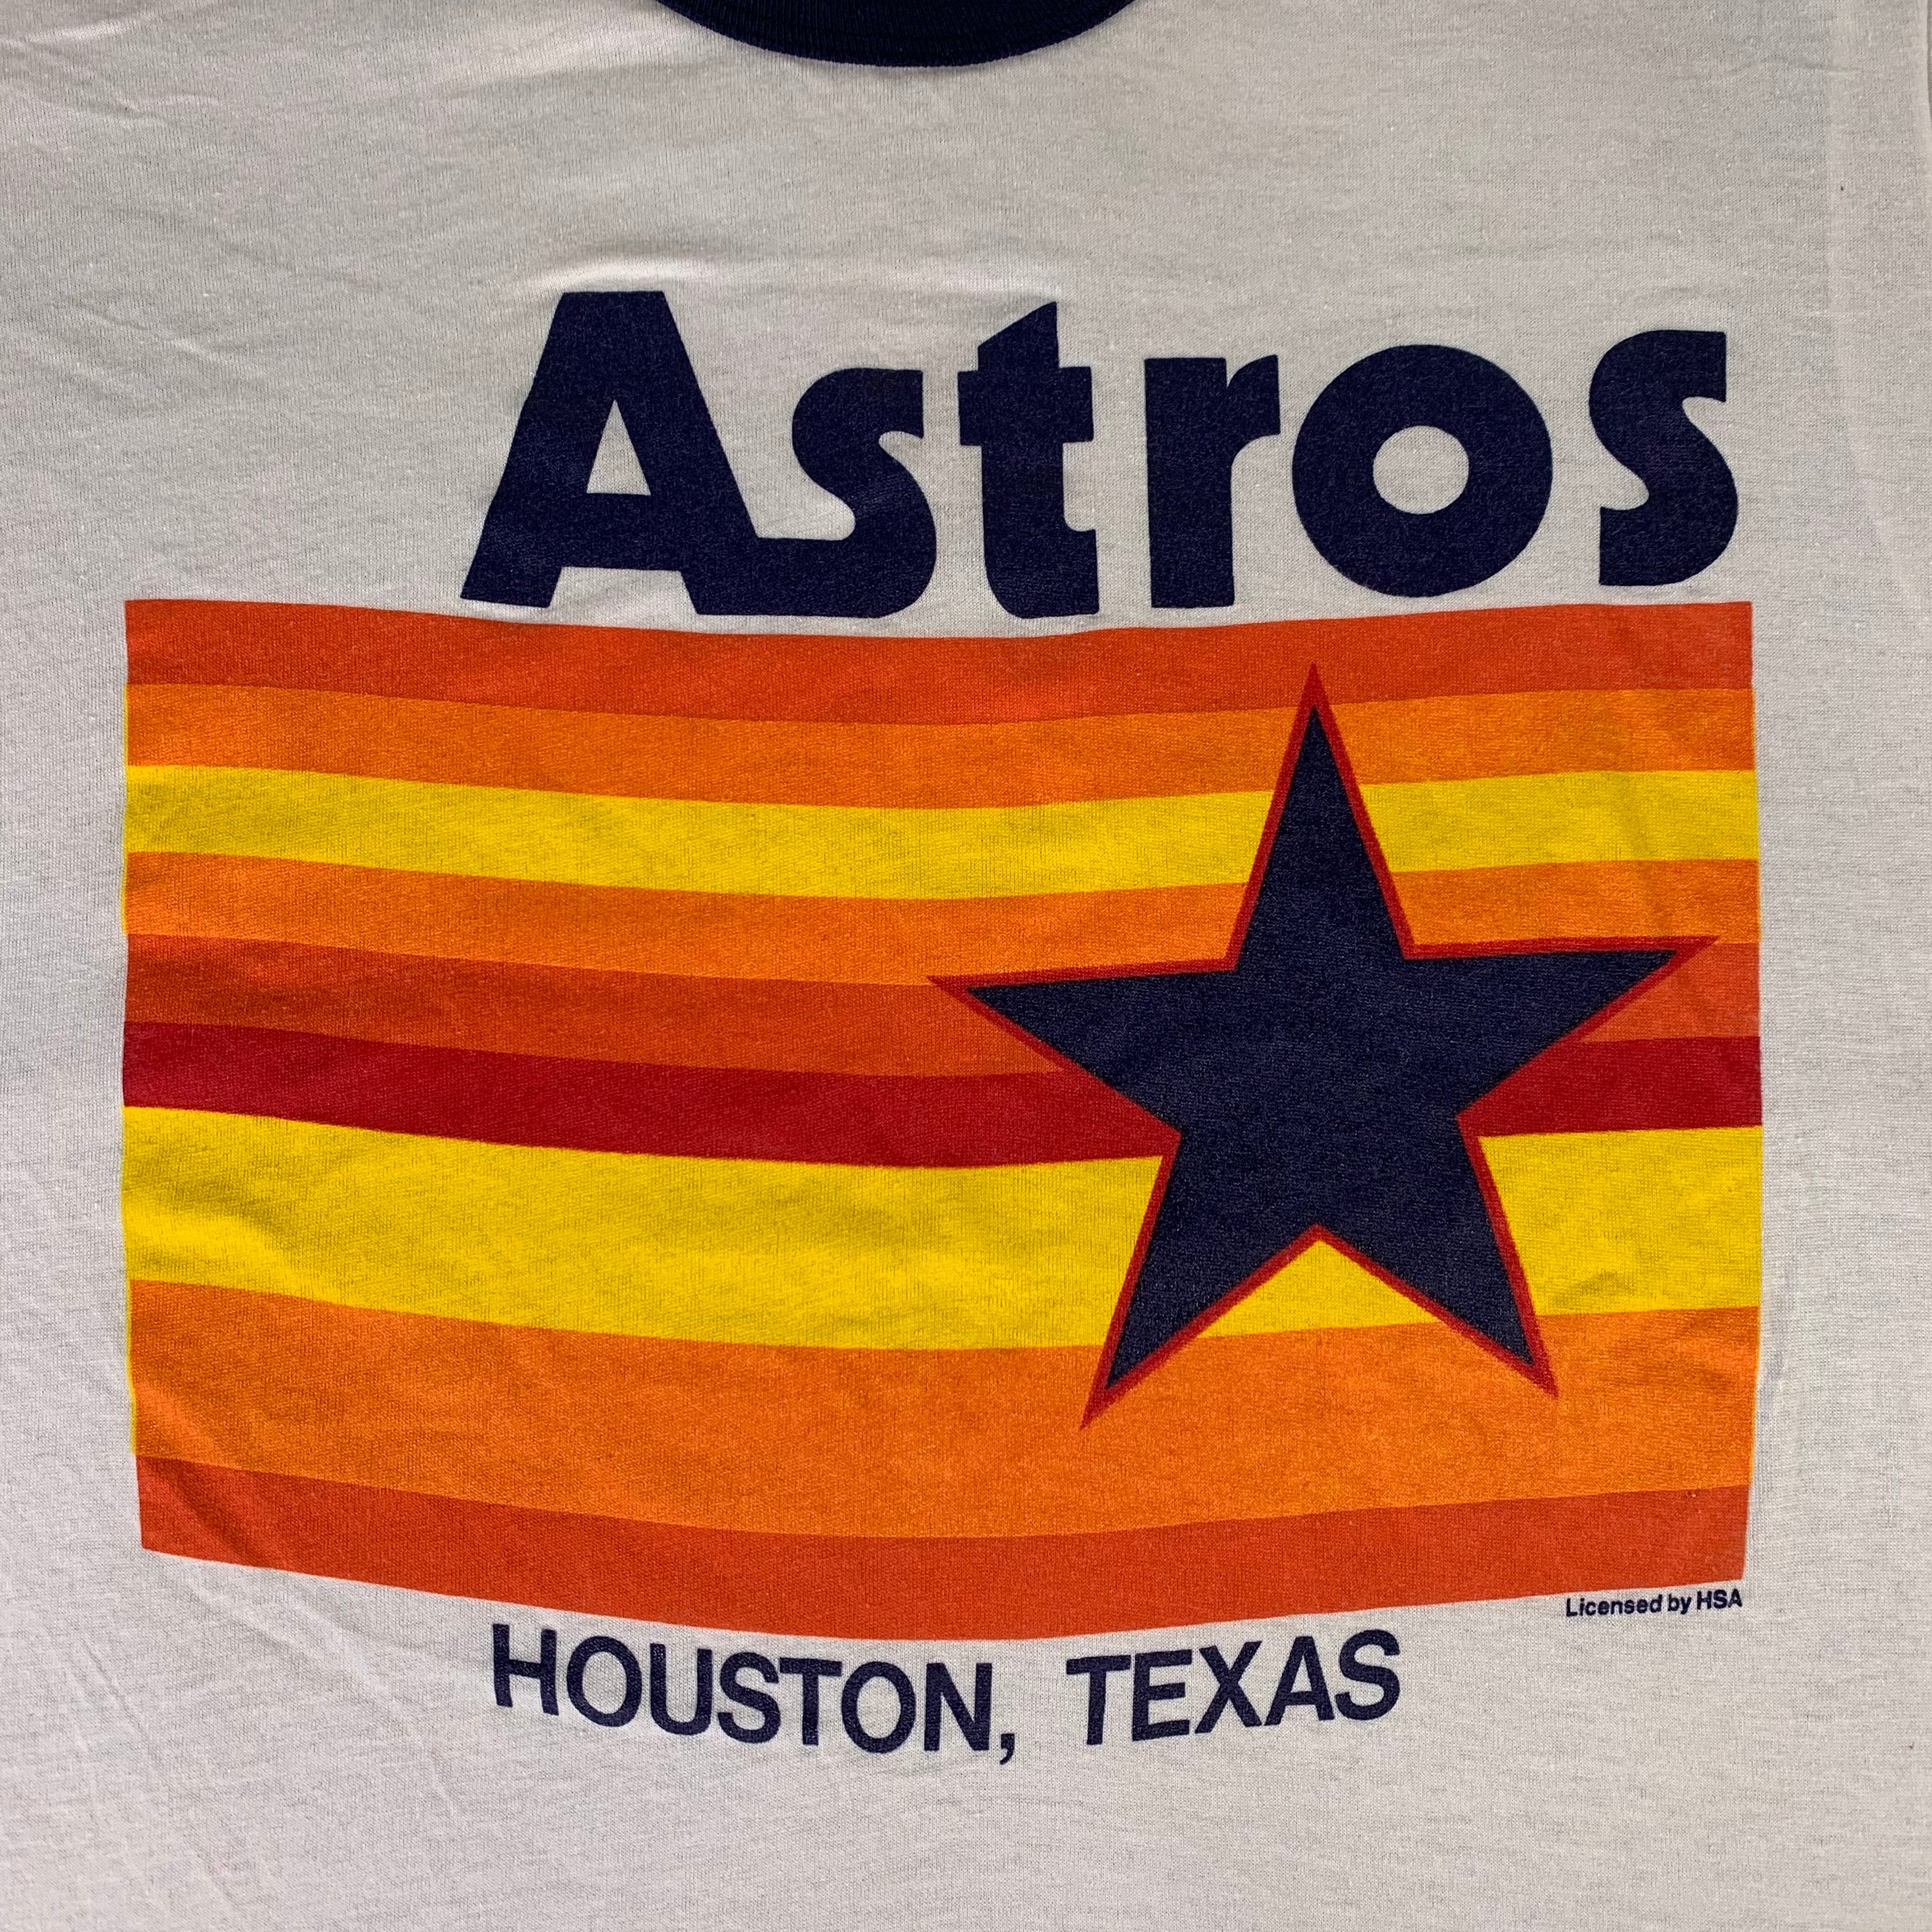 Vintage Astros Name Throwback 70s 80s Retro Gift Men T-shirt